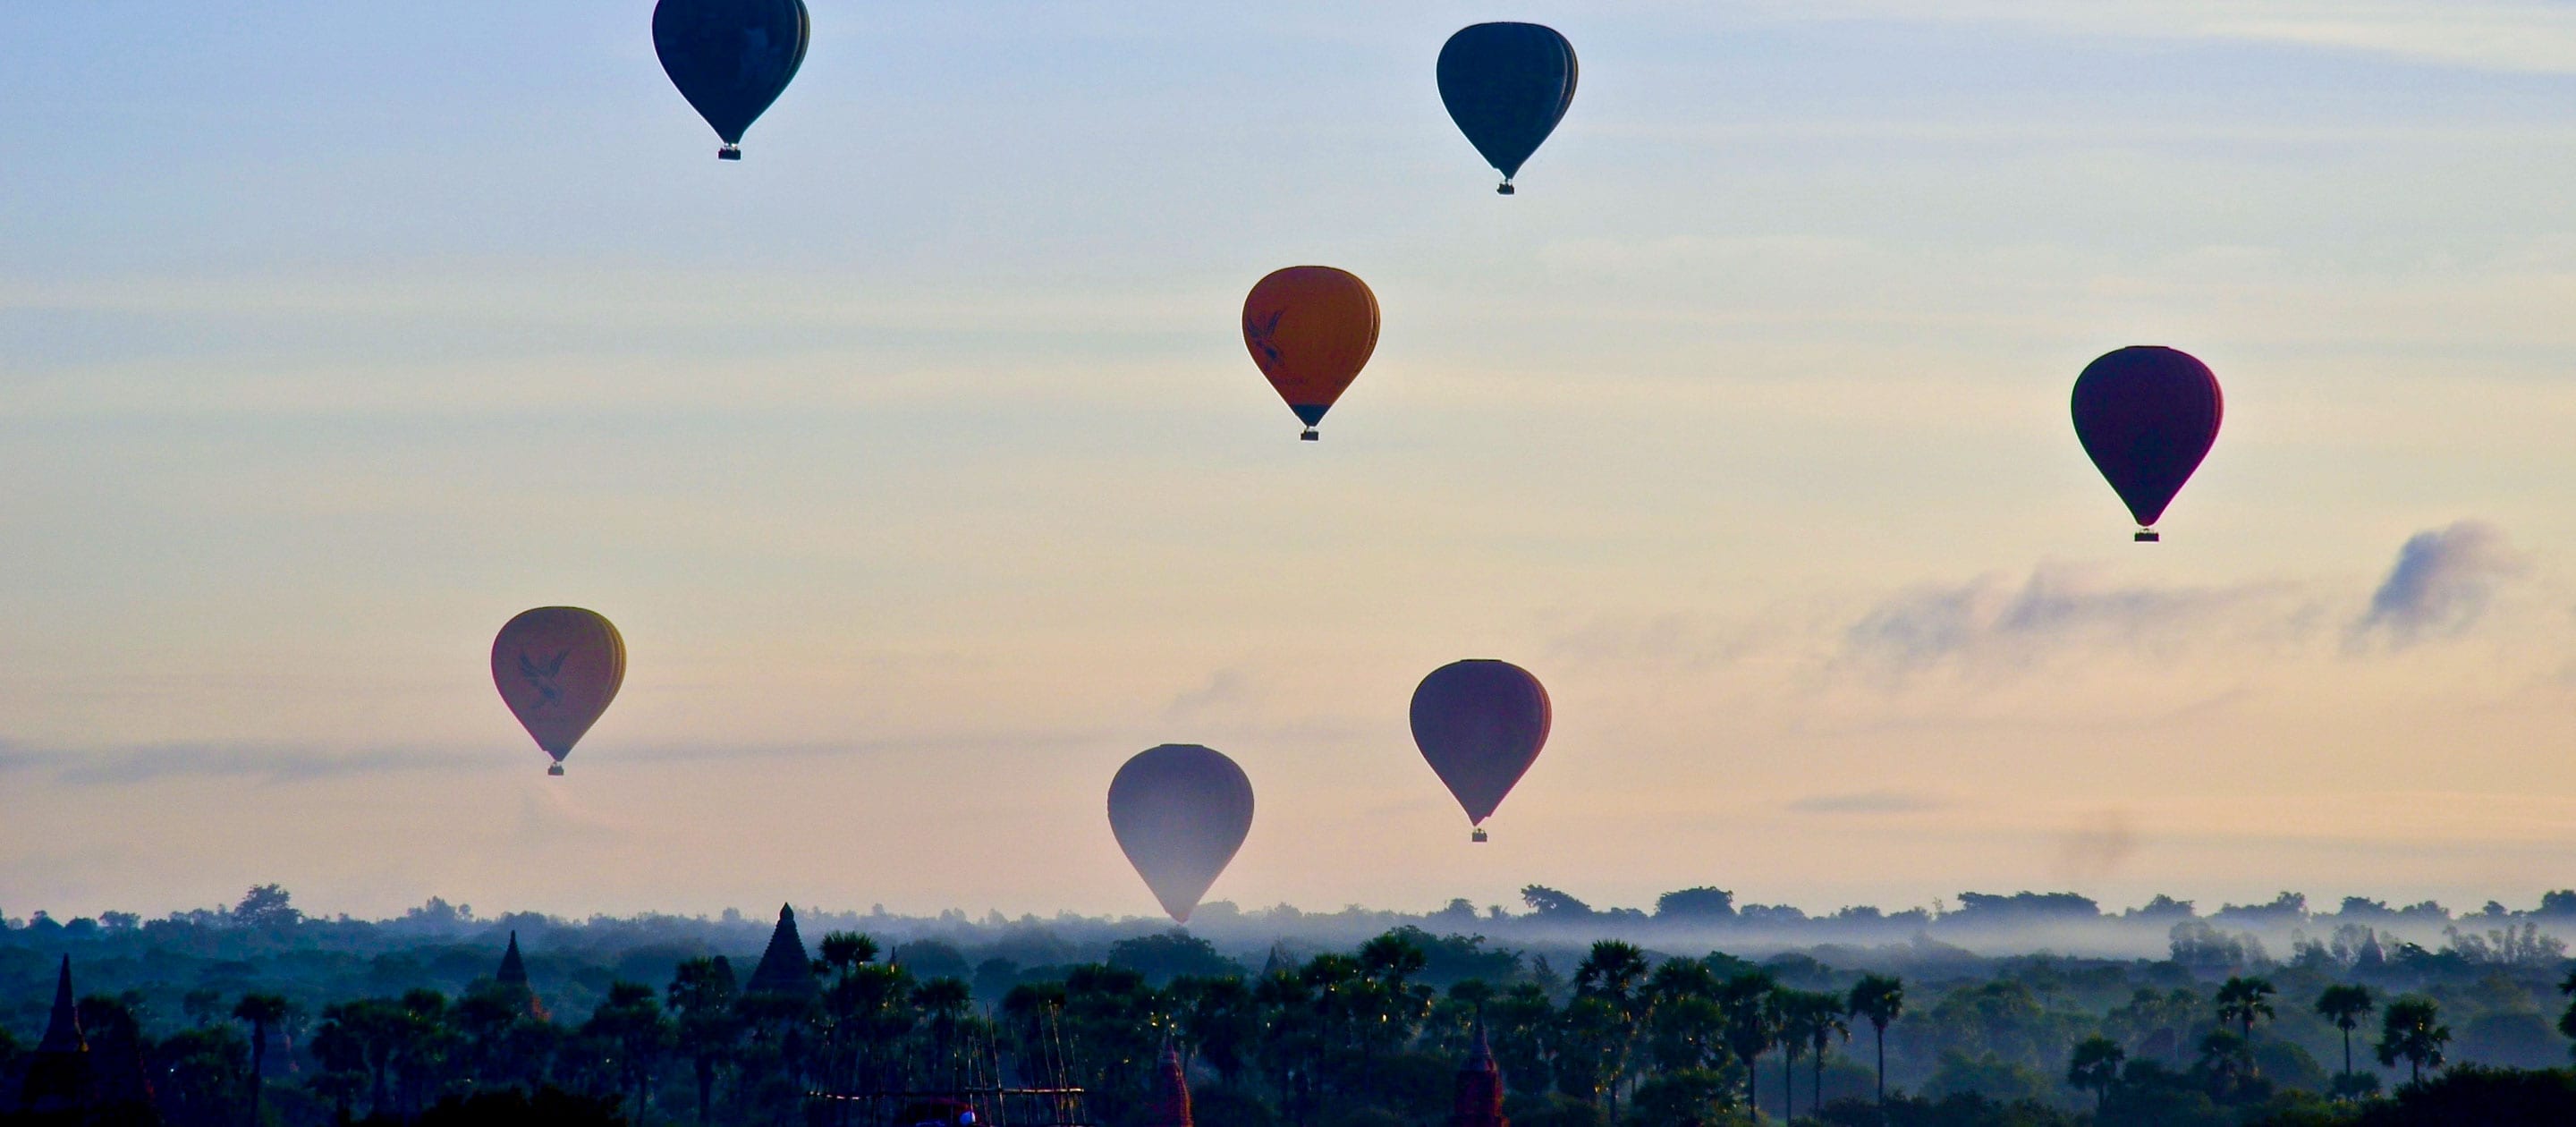 Hot air balloons in Myanmar sky